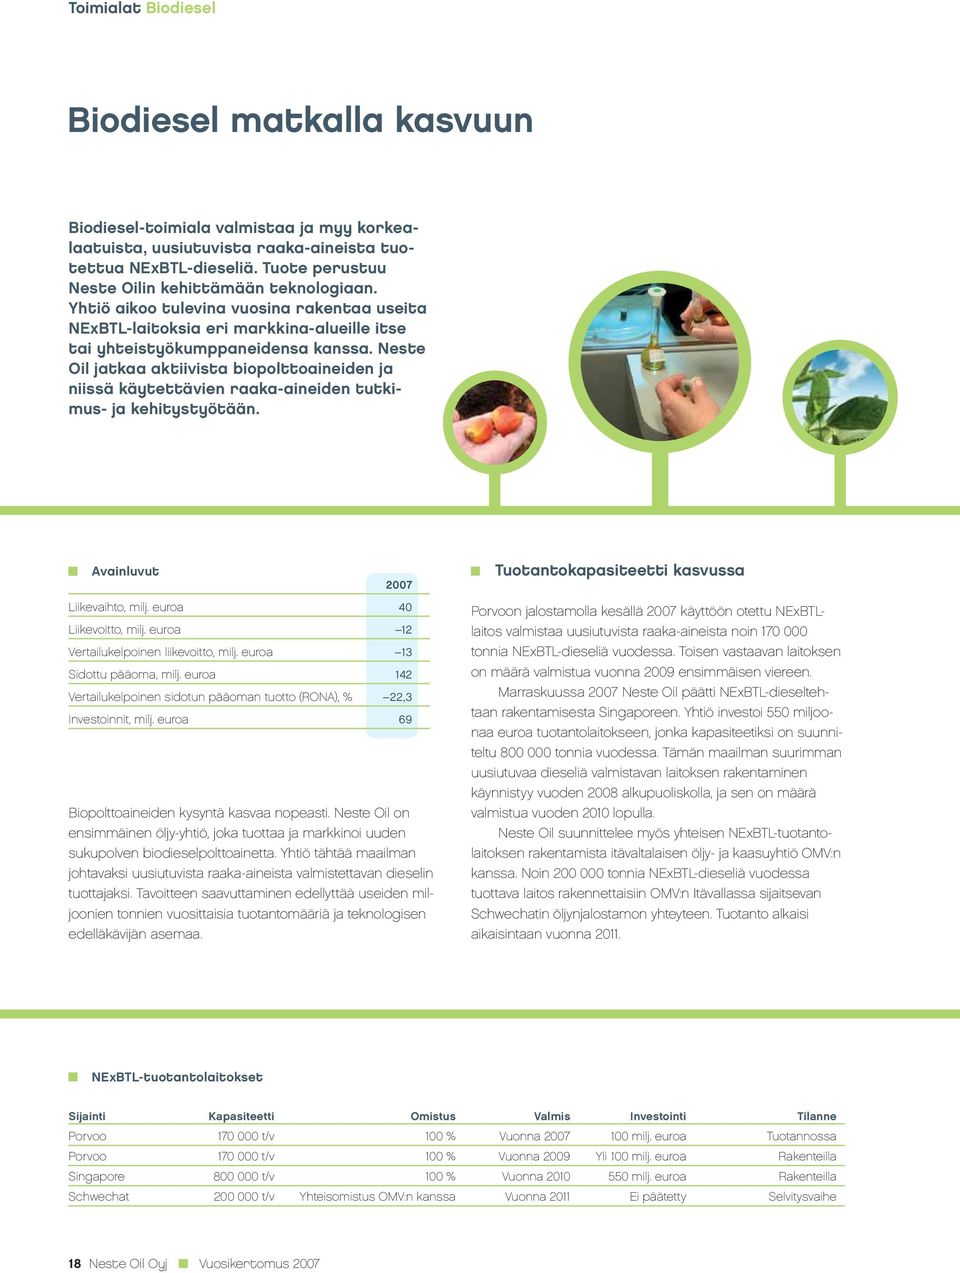 Neste Oil jatkaa aktiivista biopolttoaineiden ja niissä käytettävien raaka-aineiden tutkimus- ja kehitystyötään. Avainluvut 2007 Tuotantokapasiteetti kasvussa Liikevaihto, milj.